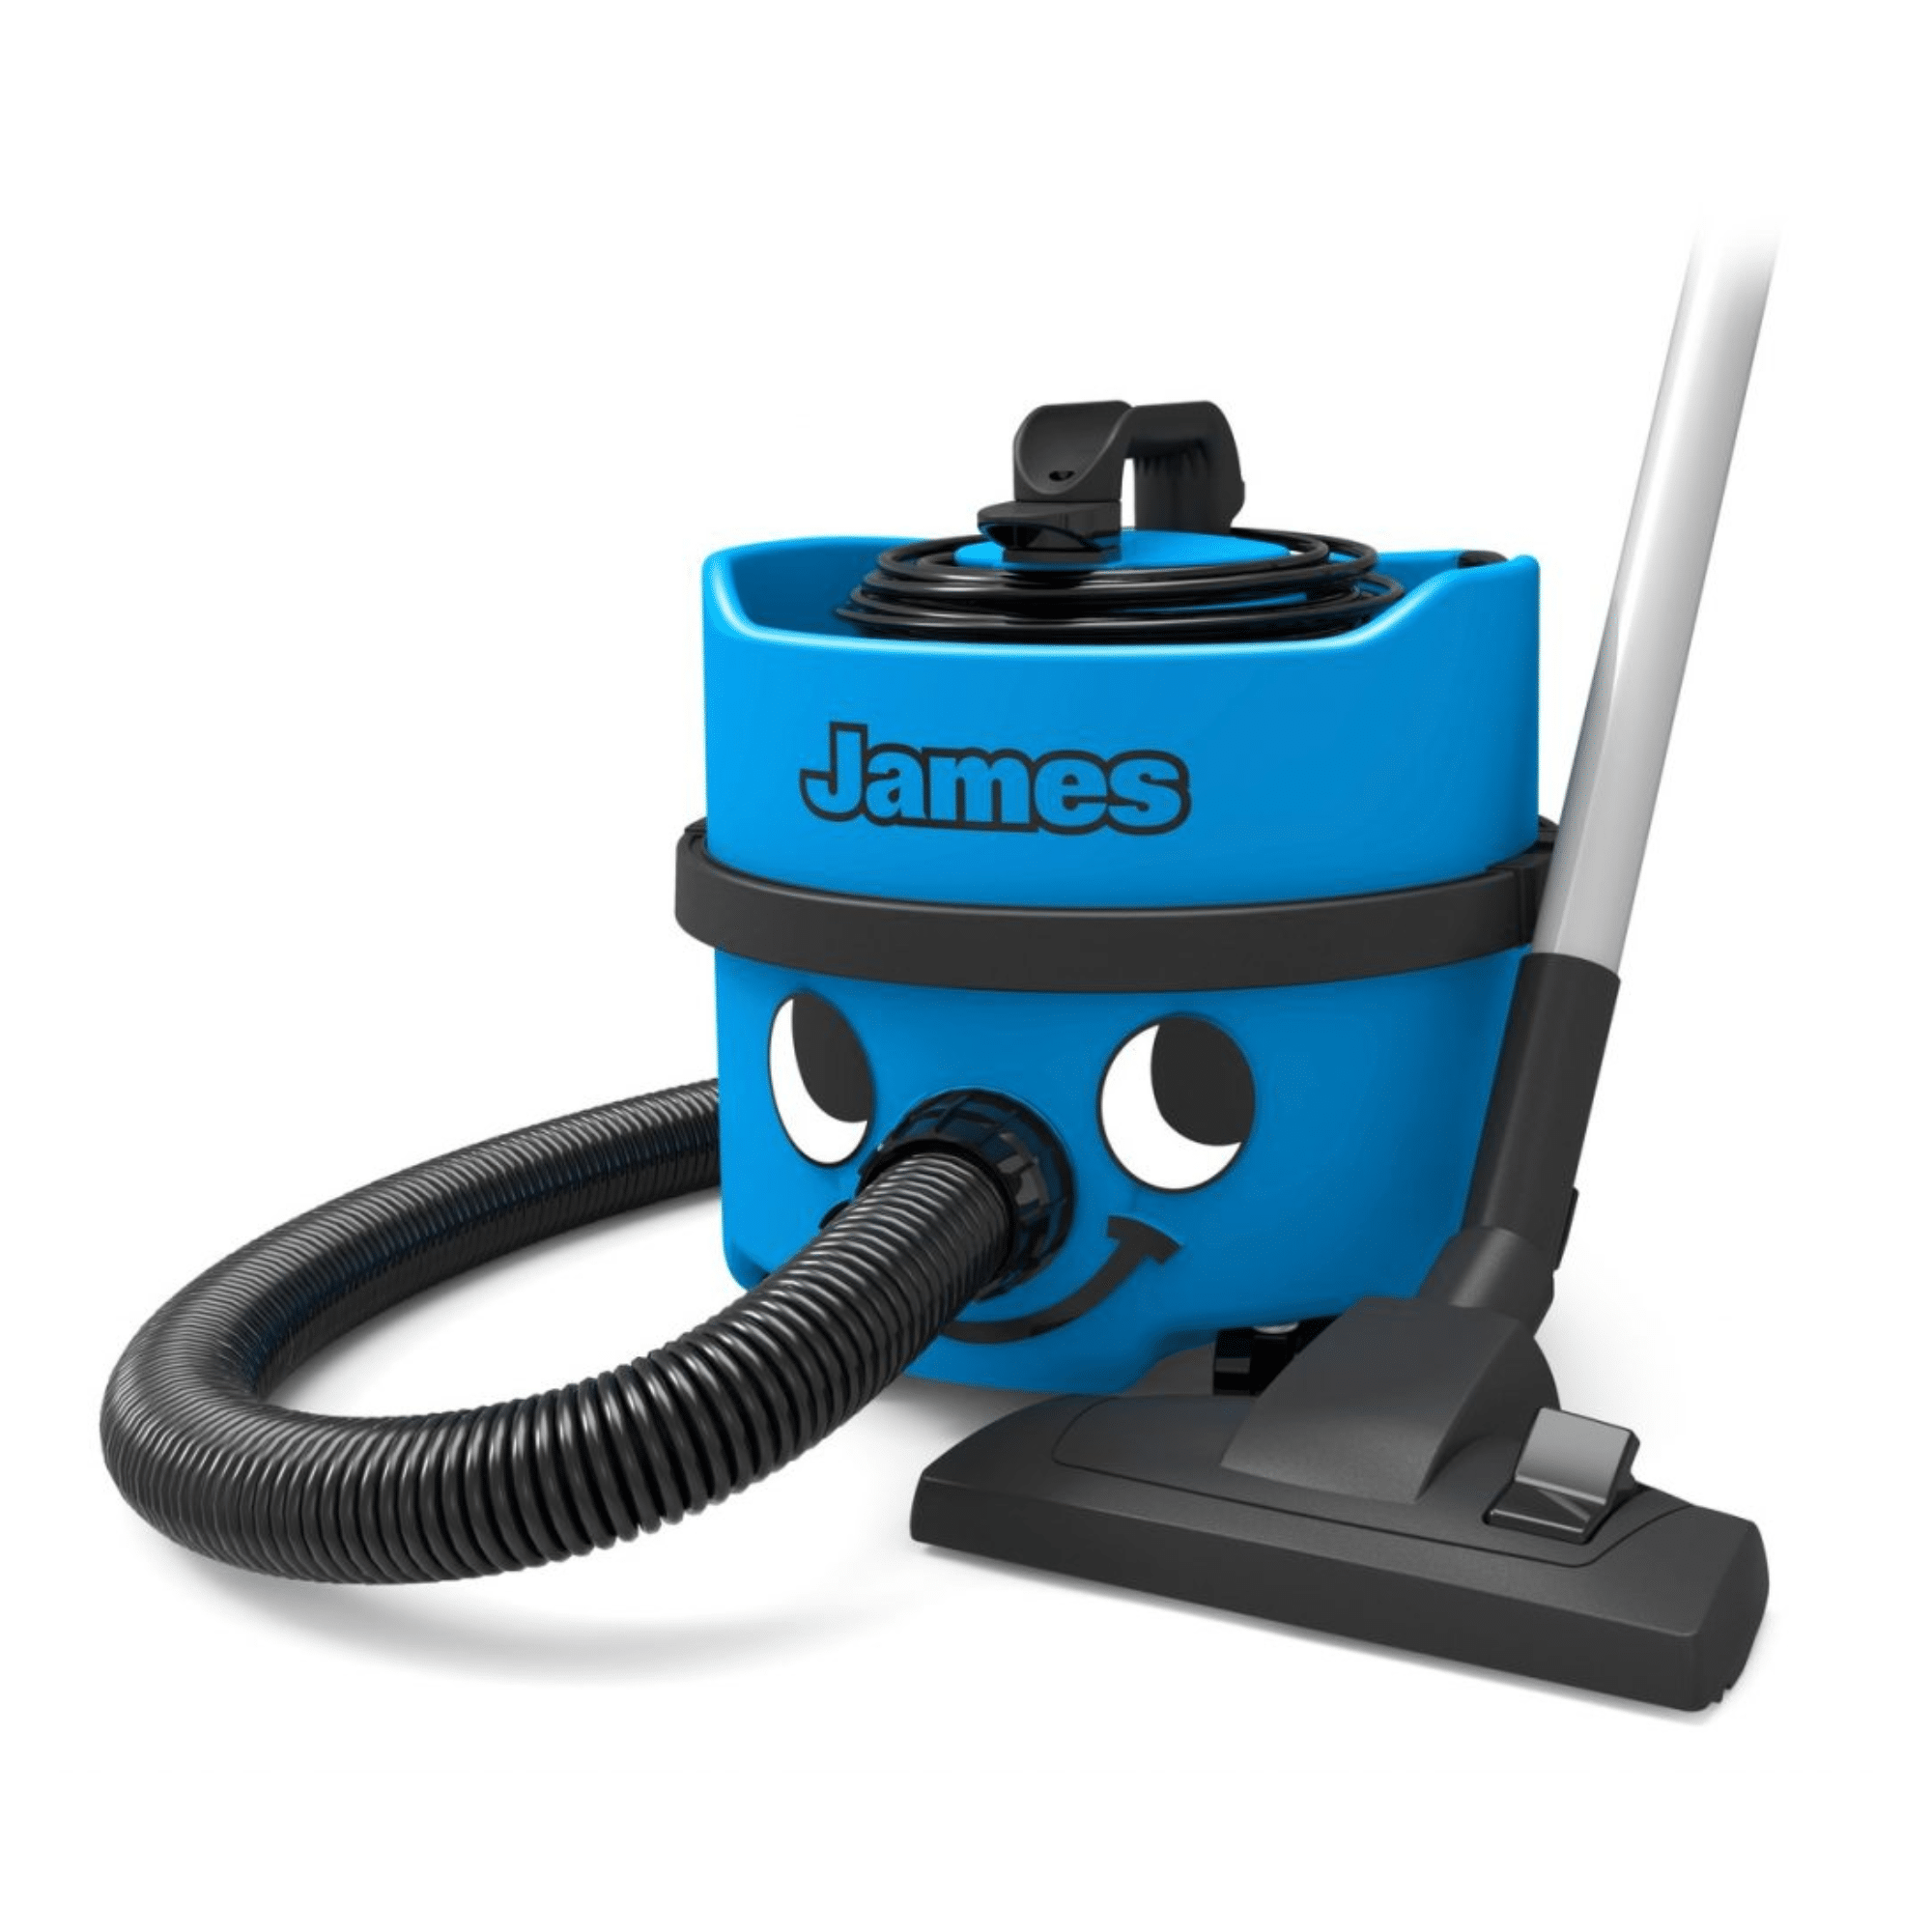 Numatic James Dry Vacuum Cleaner